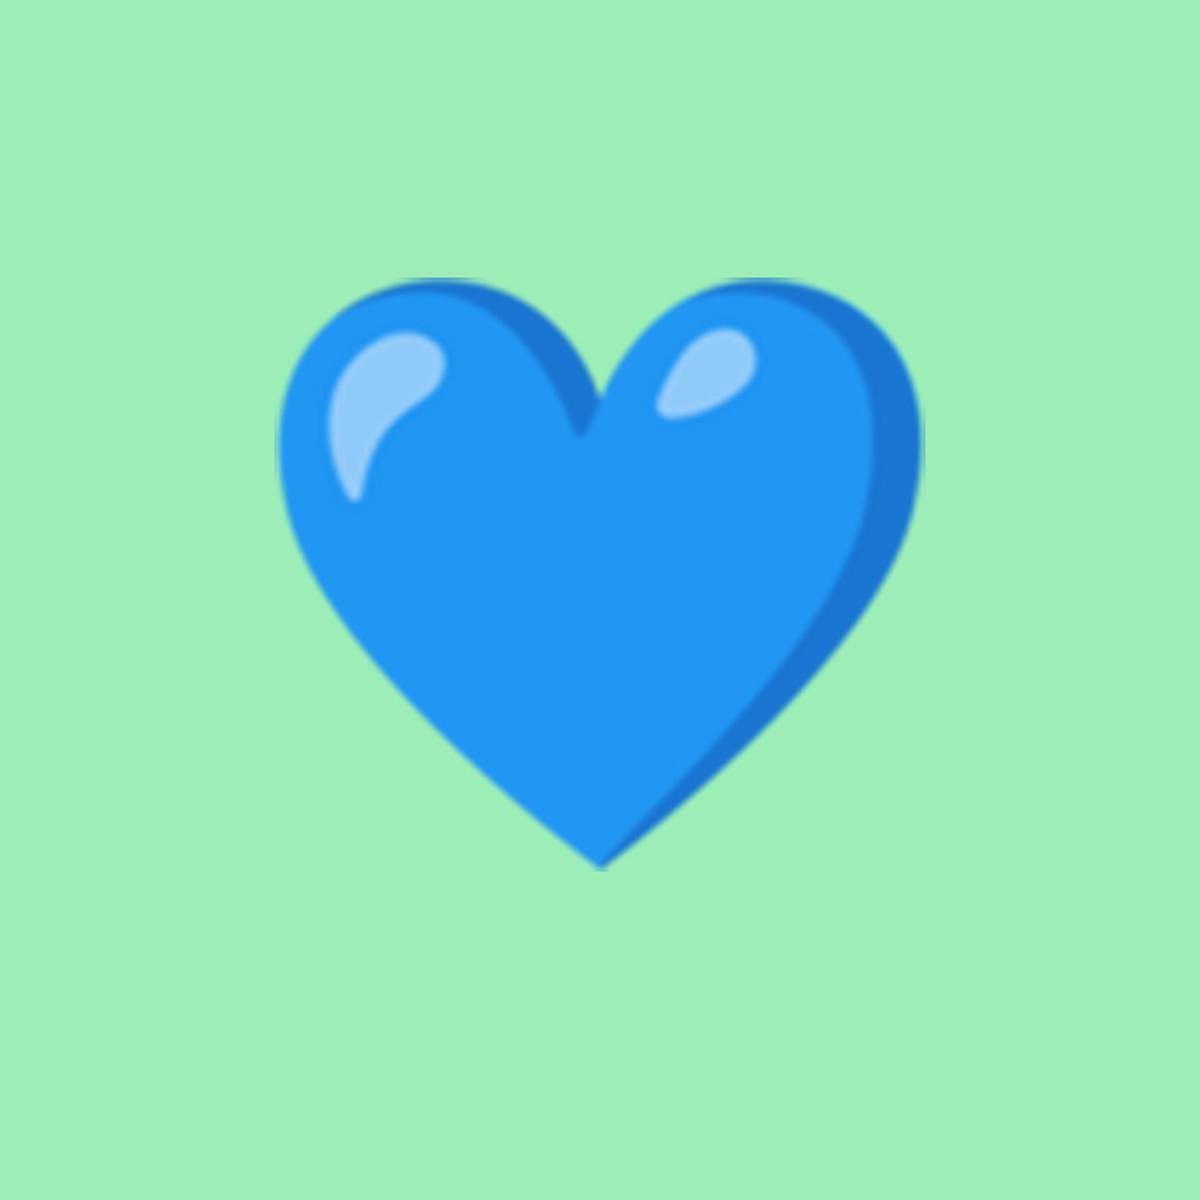 Comenta con un corazón azul 💙 si encontrastes todas la palabras.